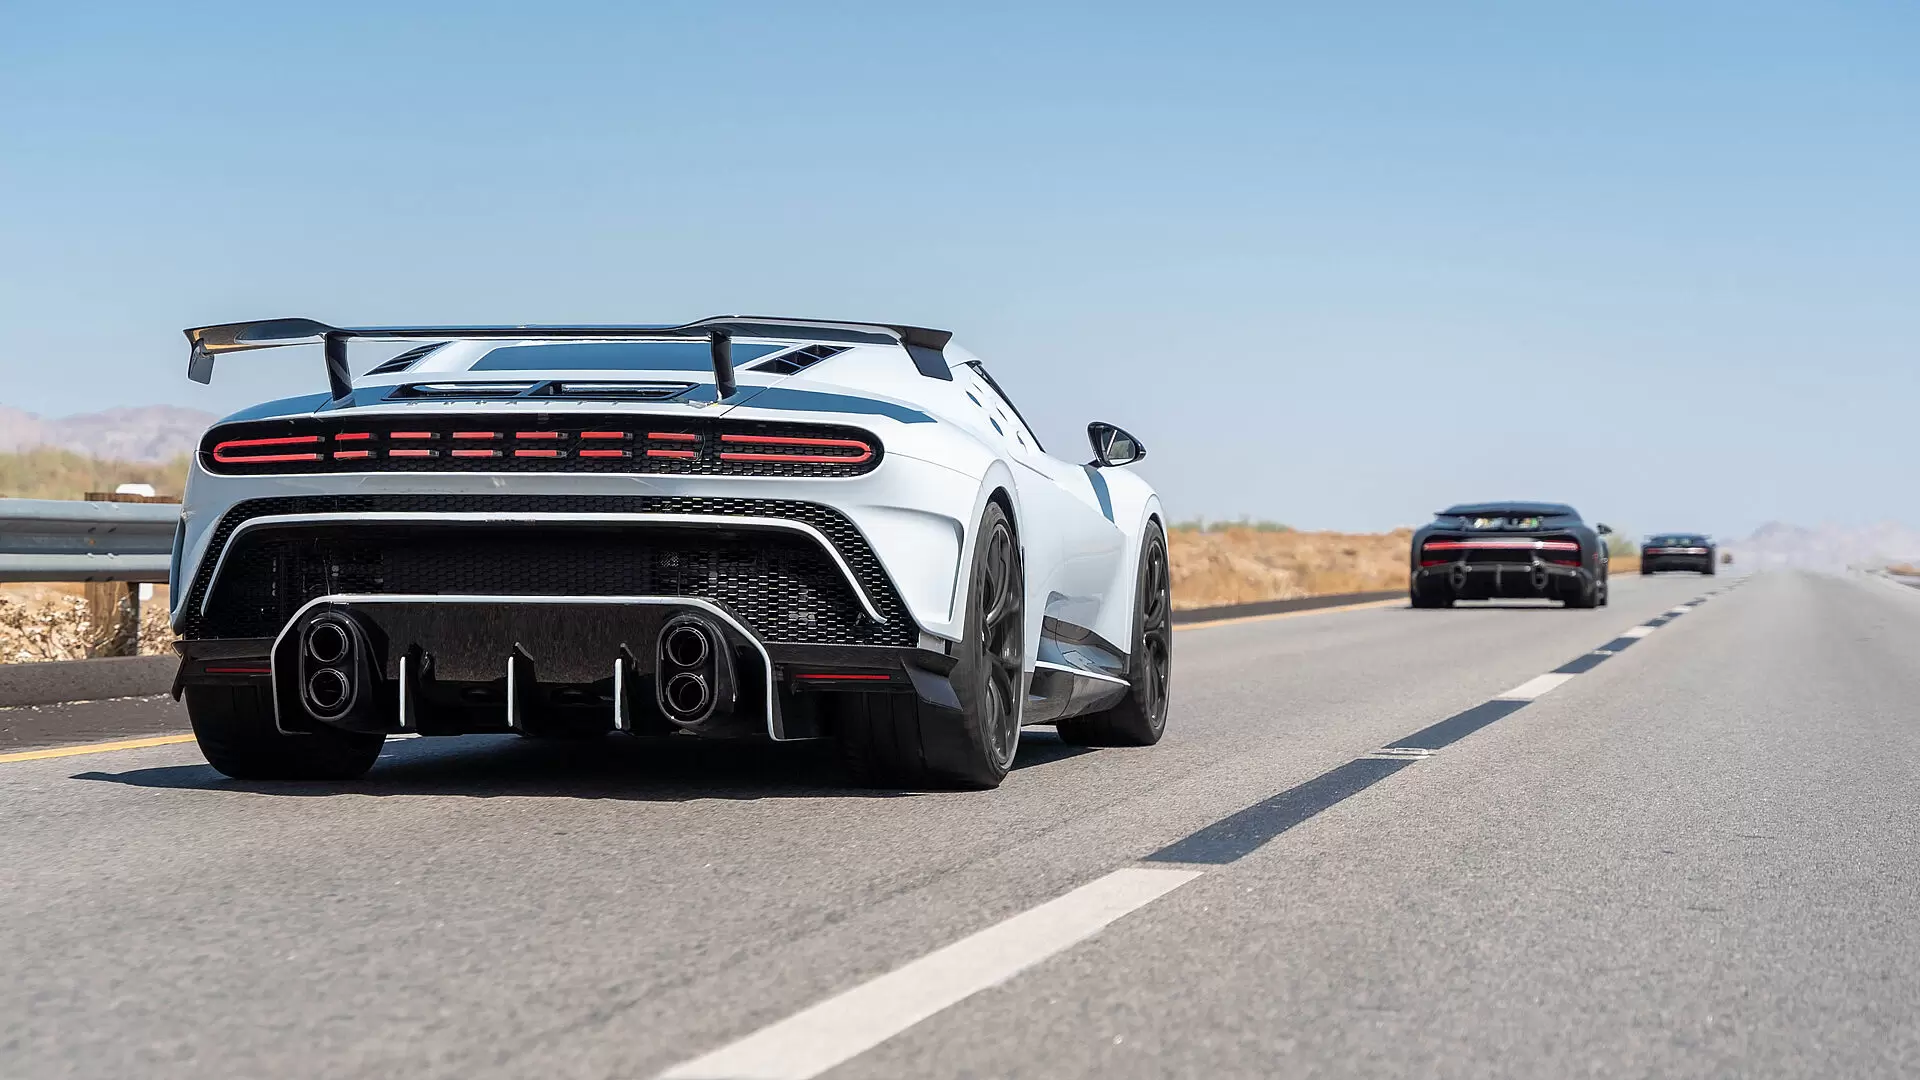 Bugatti's convoy of hyper sports cars